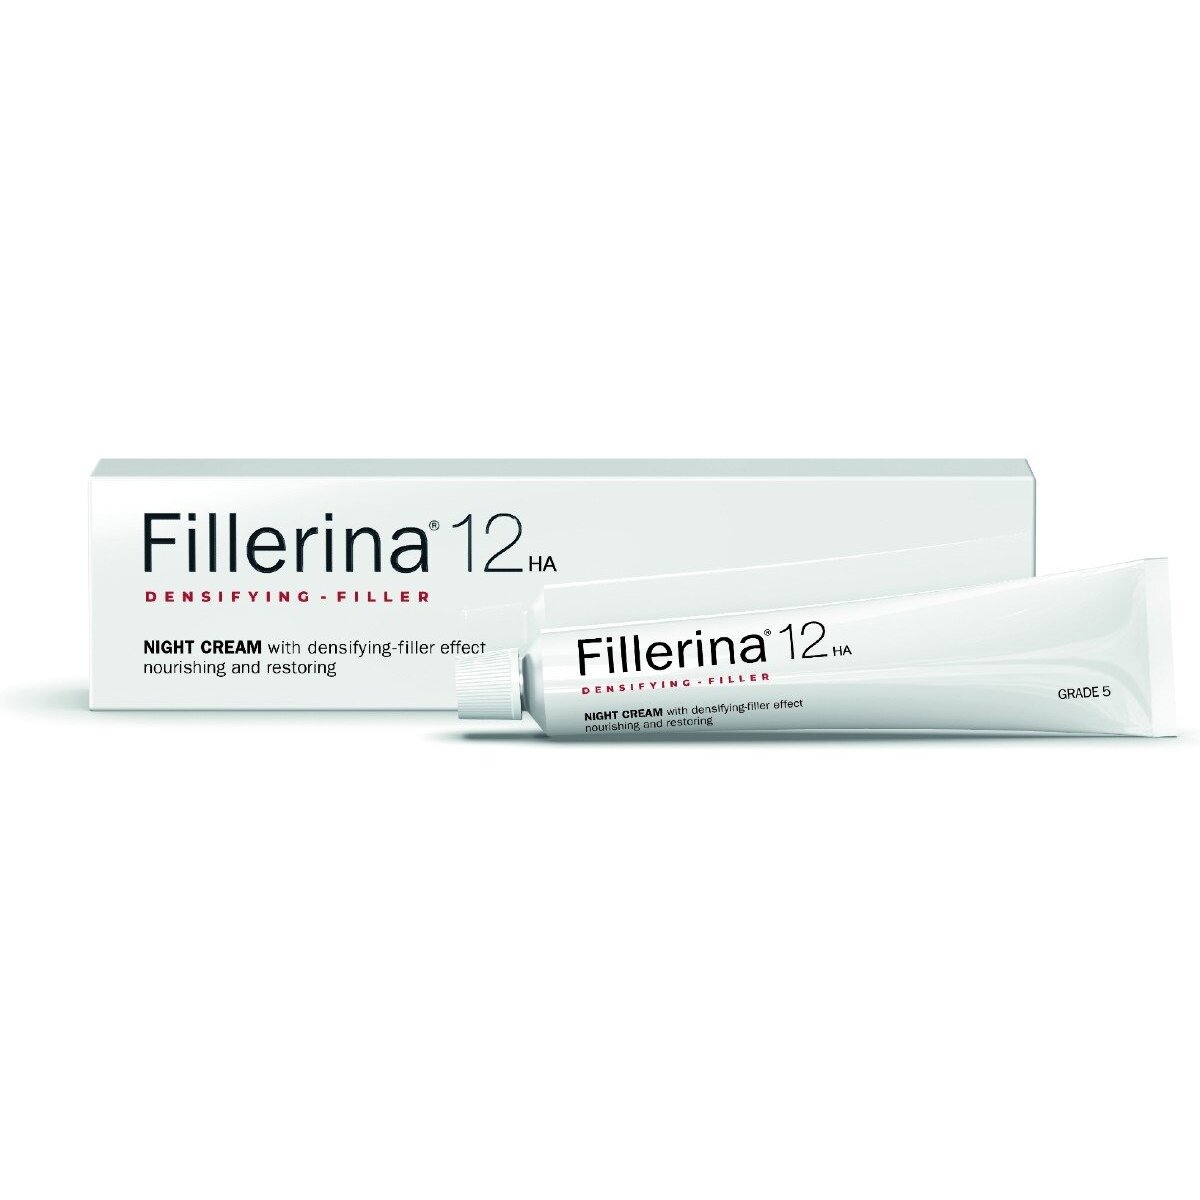 Крем Fillerina уровень 5 для лица ночной с укрепляющим эффектом 12 ha-night cream 50 мл